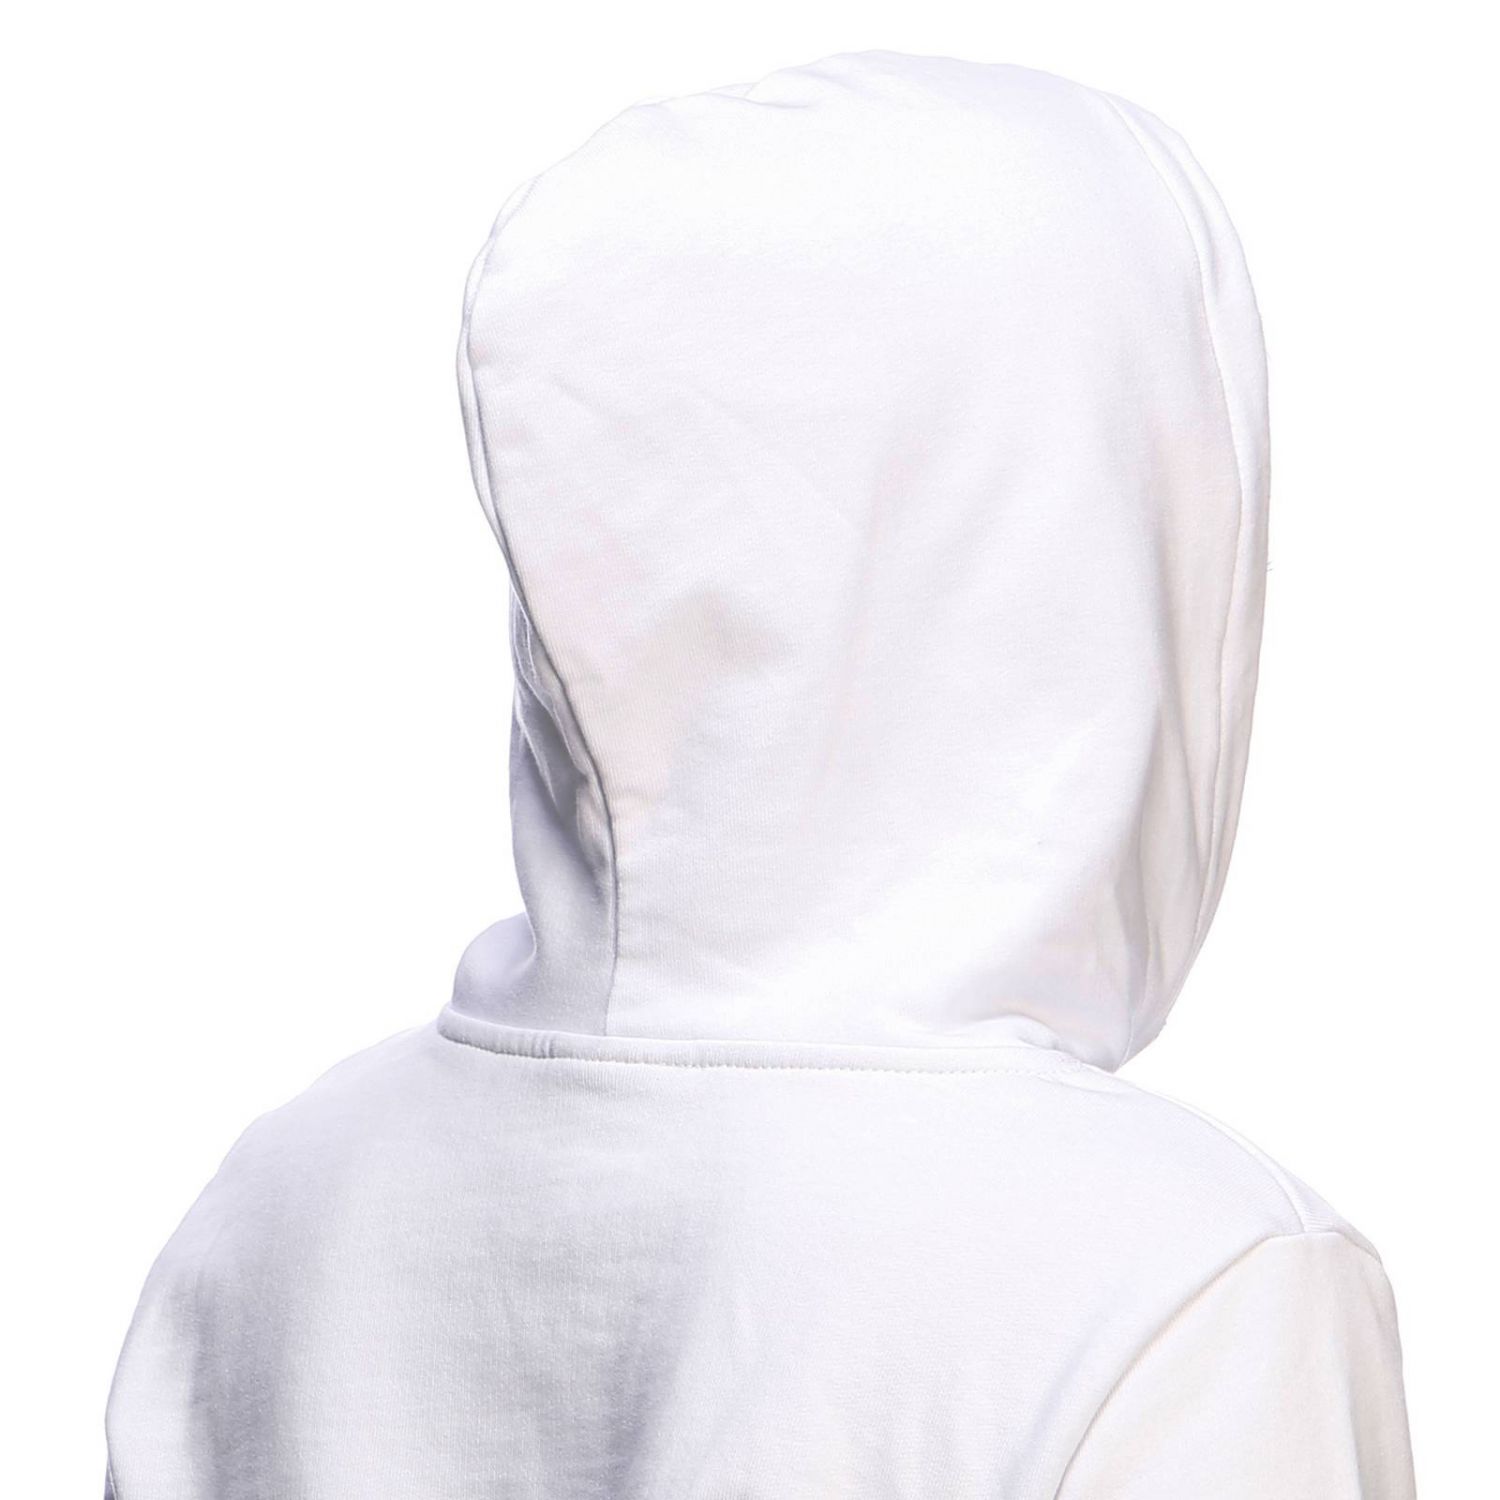 Chiara Ferragni Outlet: sweatshirt for woman - White | Chiara Ferragni ...